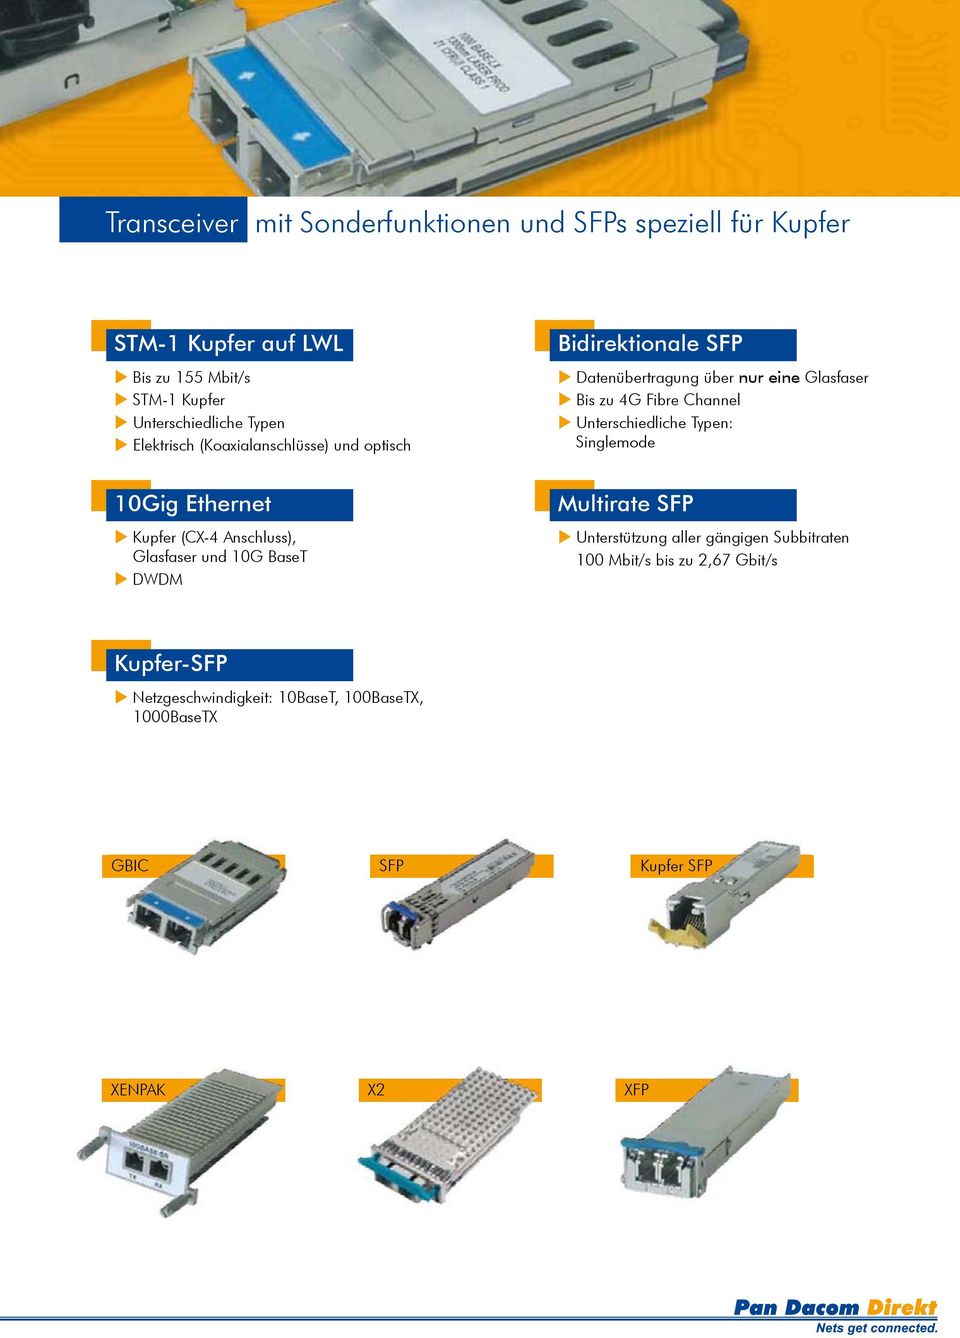 Datenübertragung über nur eine Glasfaser u Bis zu 4G Fibre Channel u Unterschiedliche Typ en: Singlemode Multirate SFP u Unterstützung aller